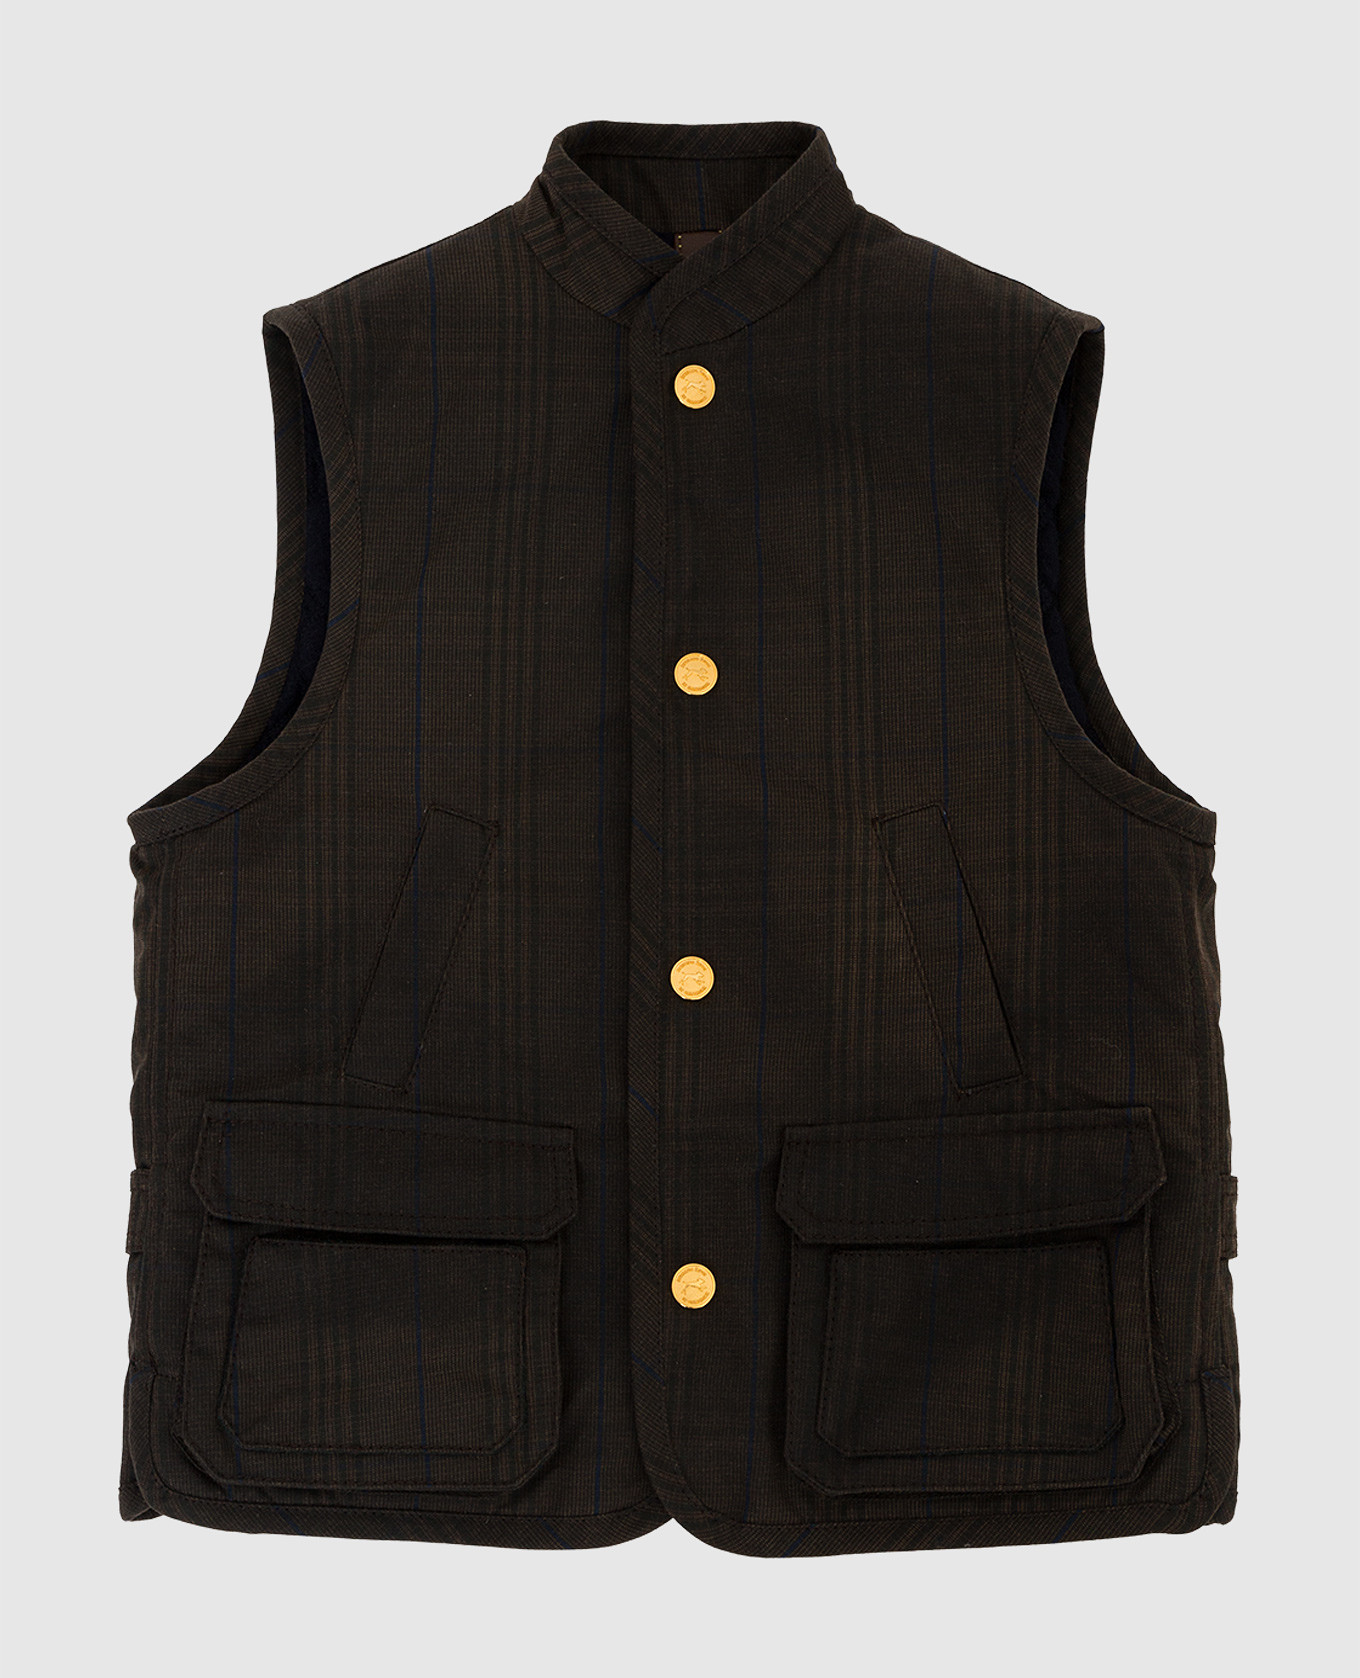 Children's dark brown checked vest